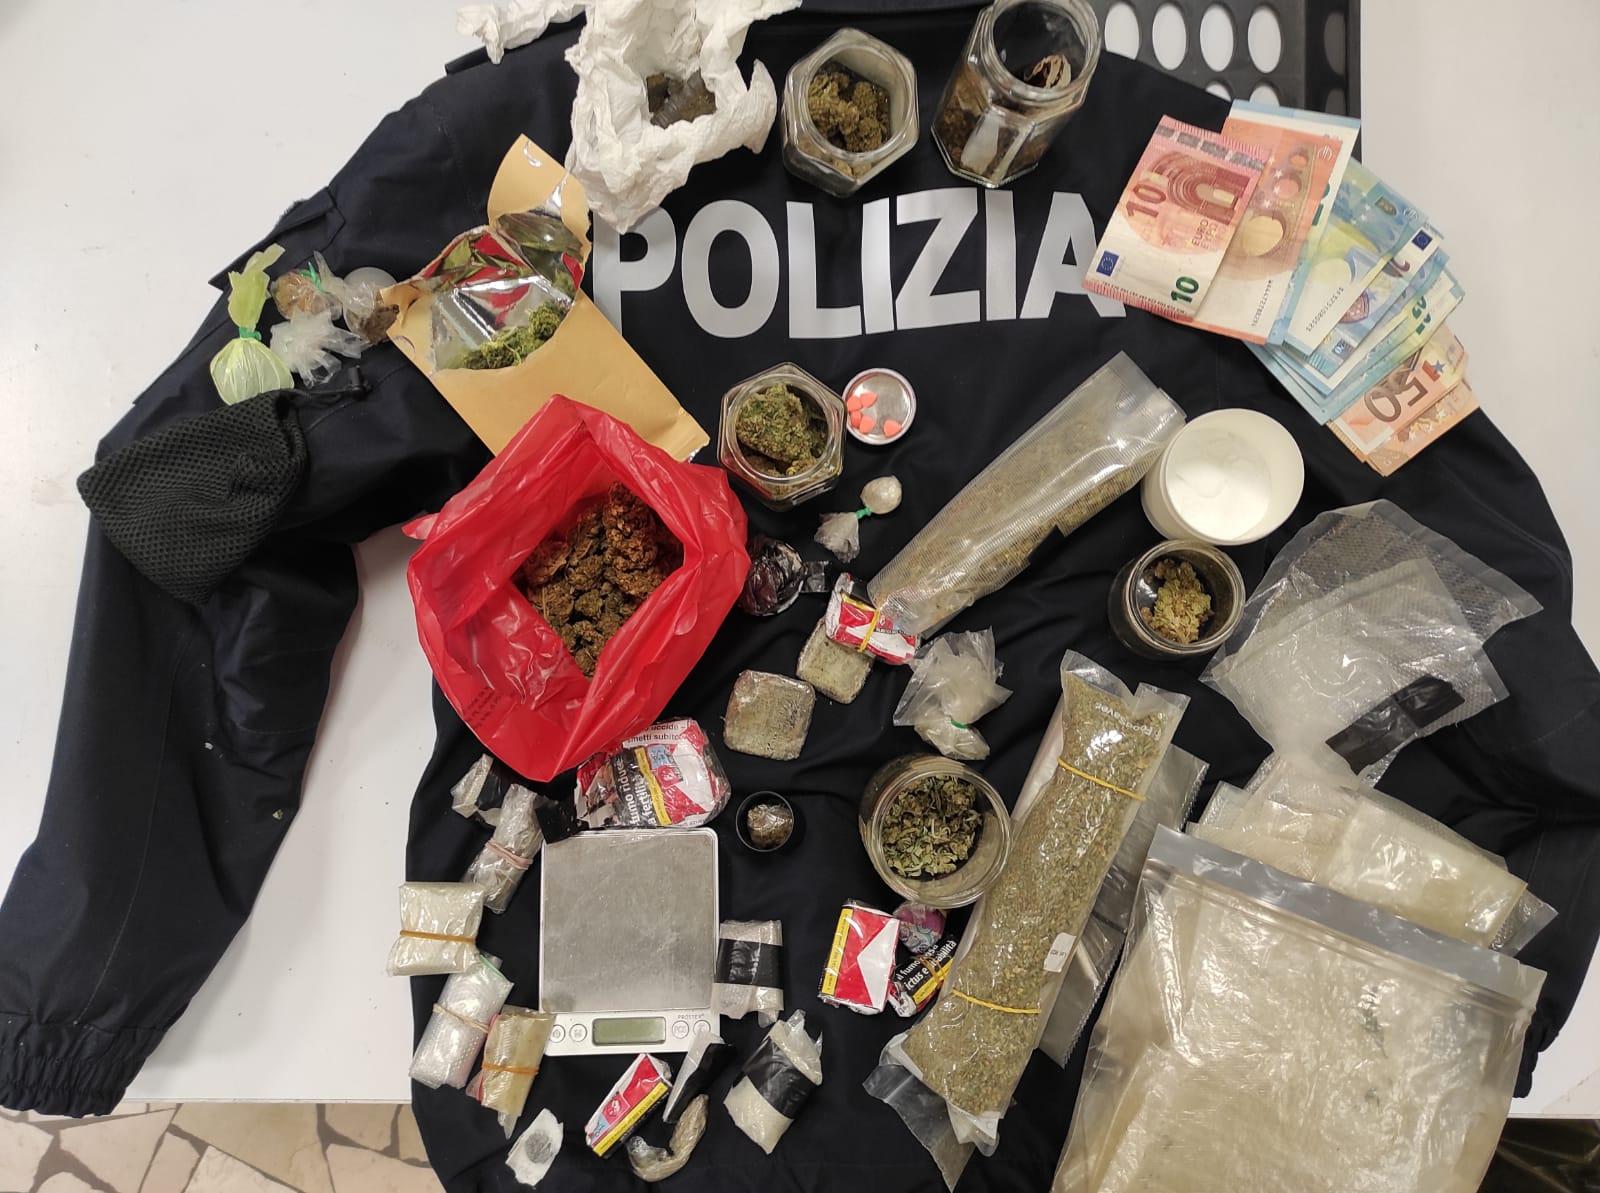 PADOVA – controllato dalla Volante e sorpreso con marijuana, hashish e MDMA. 52enne arrestato per spaccio e detenzione di stupefacenti.